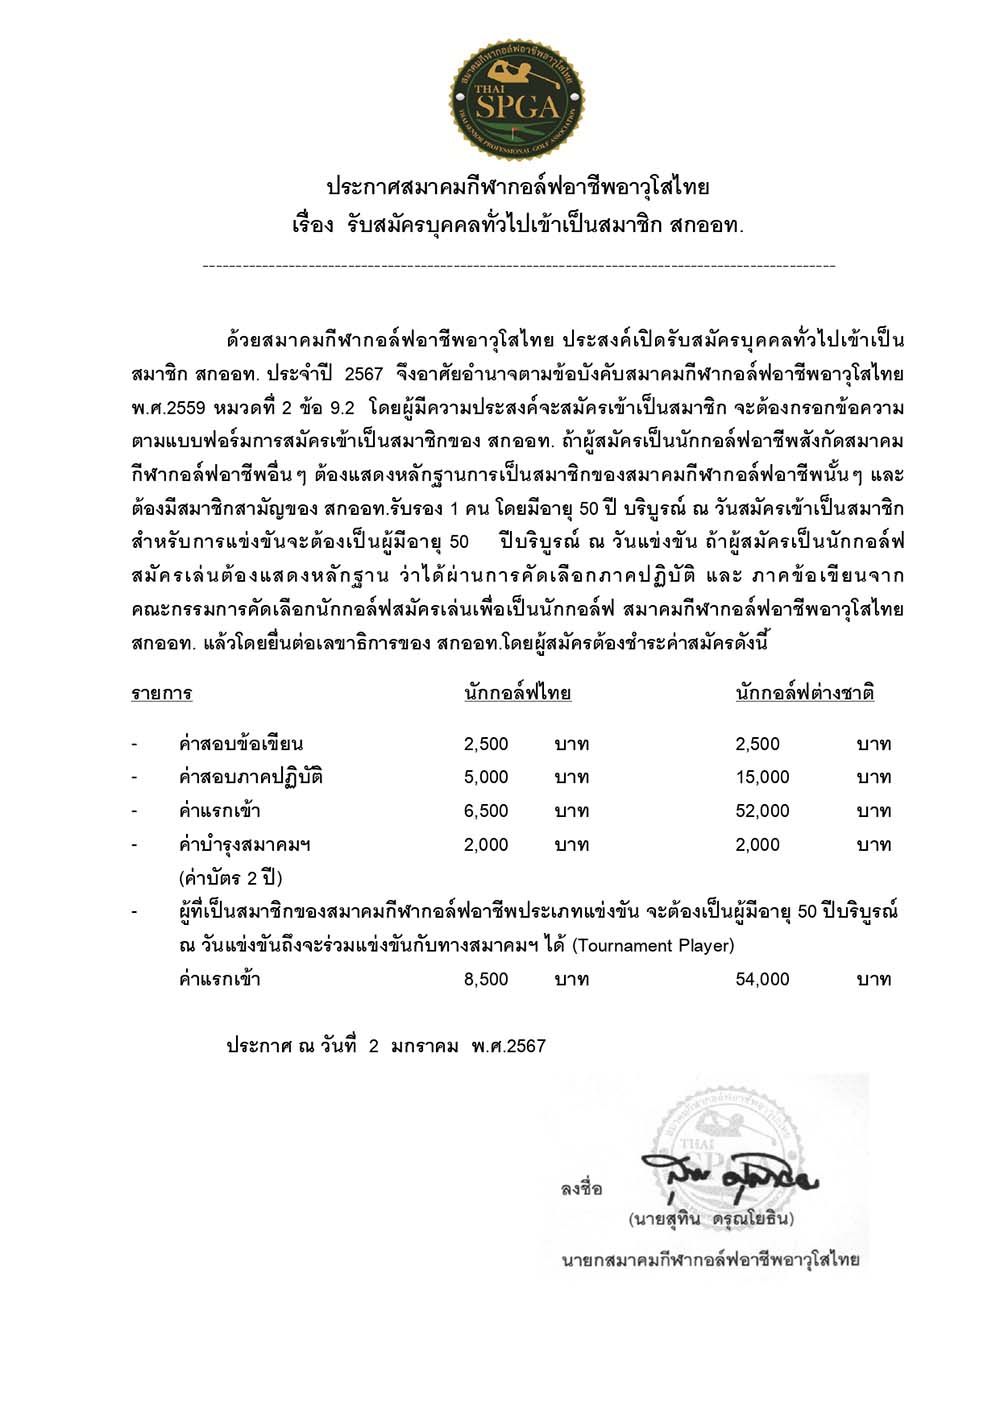 หนังสือสอบเป็นภาษาไทย สนามกอล์ฟ วอเตอร์มิ page 01